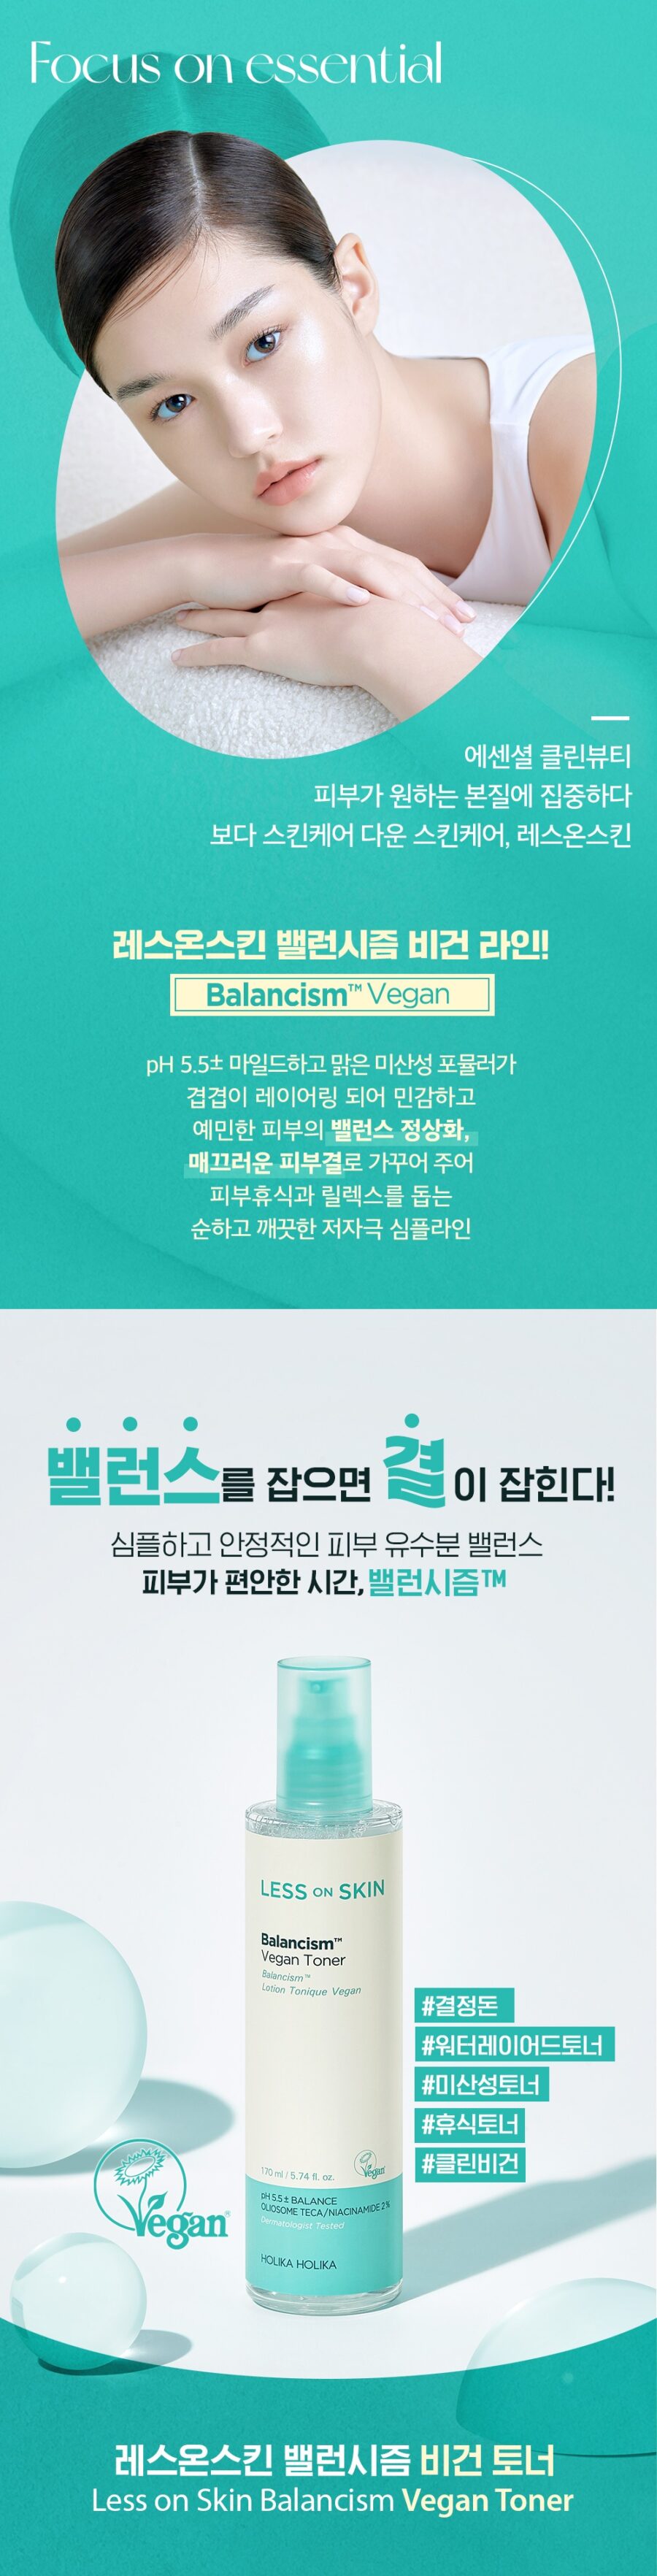 Holika Holika Less On Skin Balancism Vegan Toner korean skincare product online shop malaysia china india1